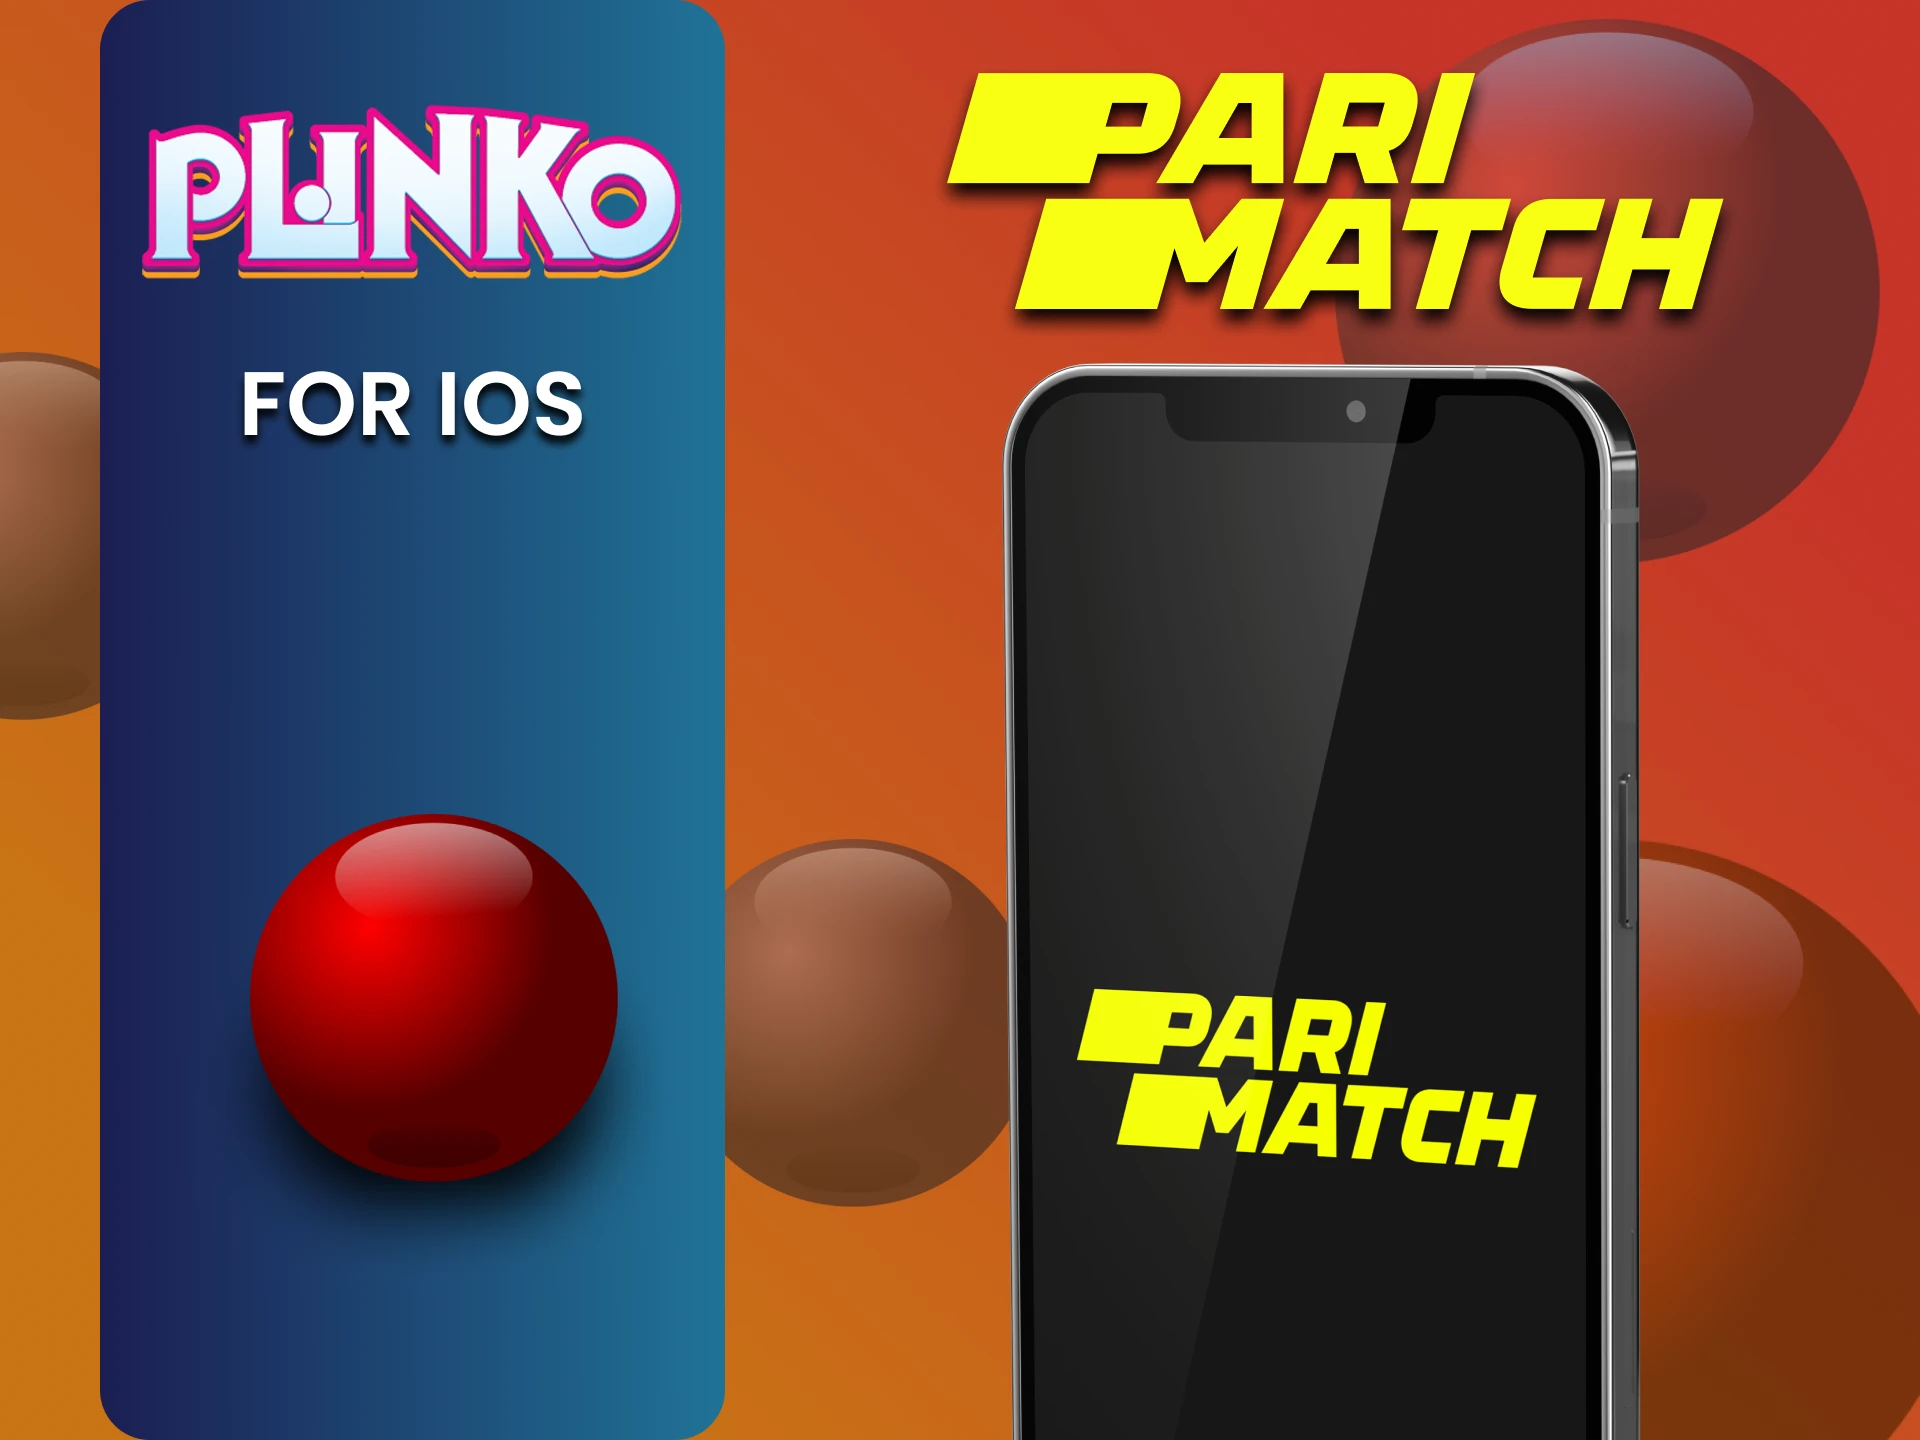 Install the Parimatch app on iOS to play Plinko.